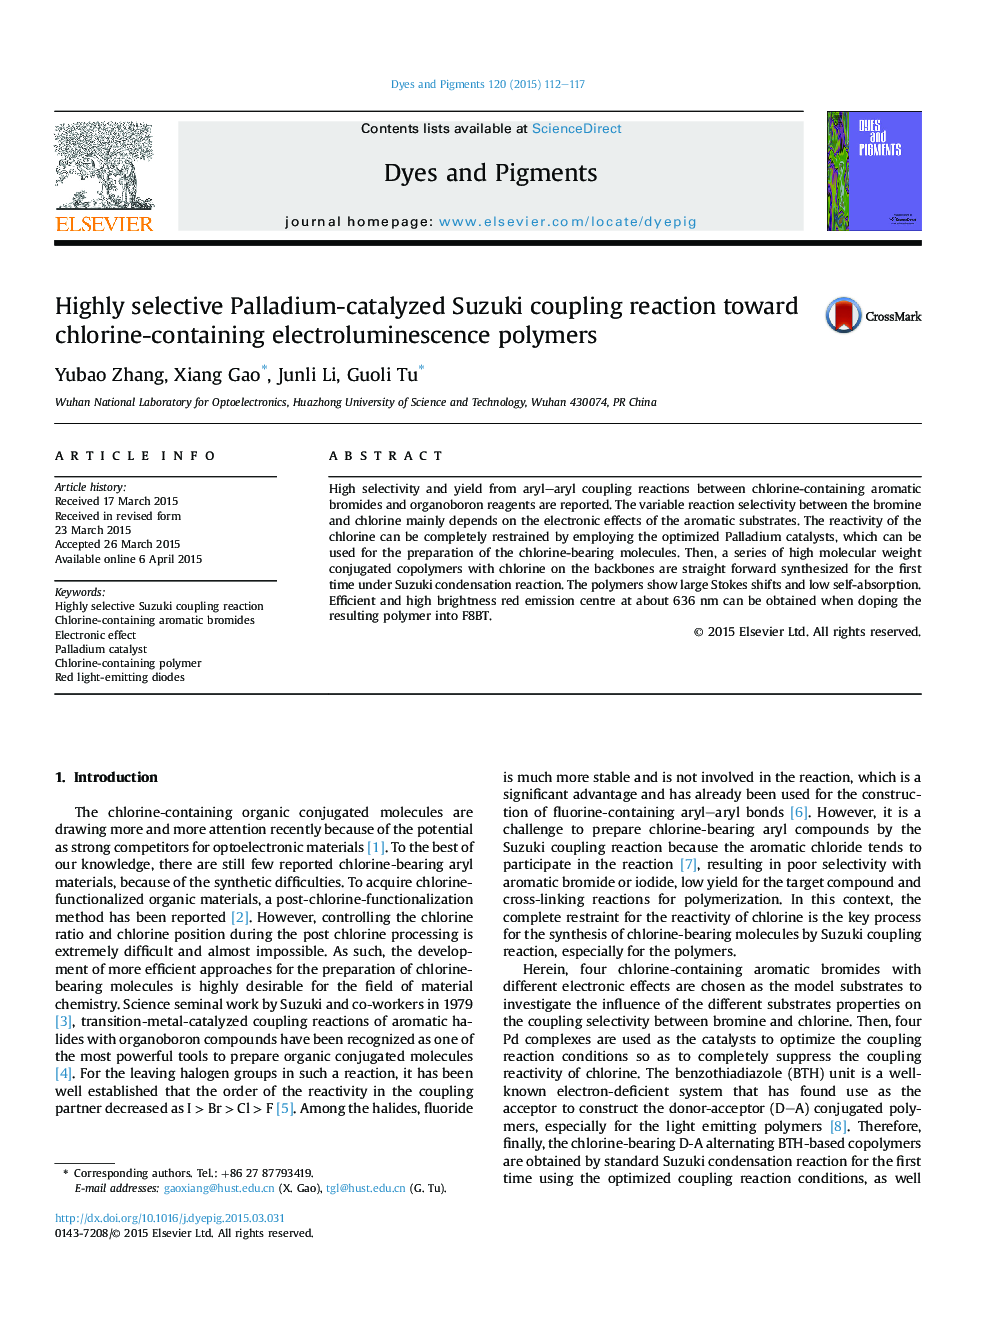 واکنش جفتگیری سوزوکی بسیار کاتالیز شده پالادیوم نسبت به پلیمرهای الکترولیومینسانس حاوی کلر 